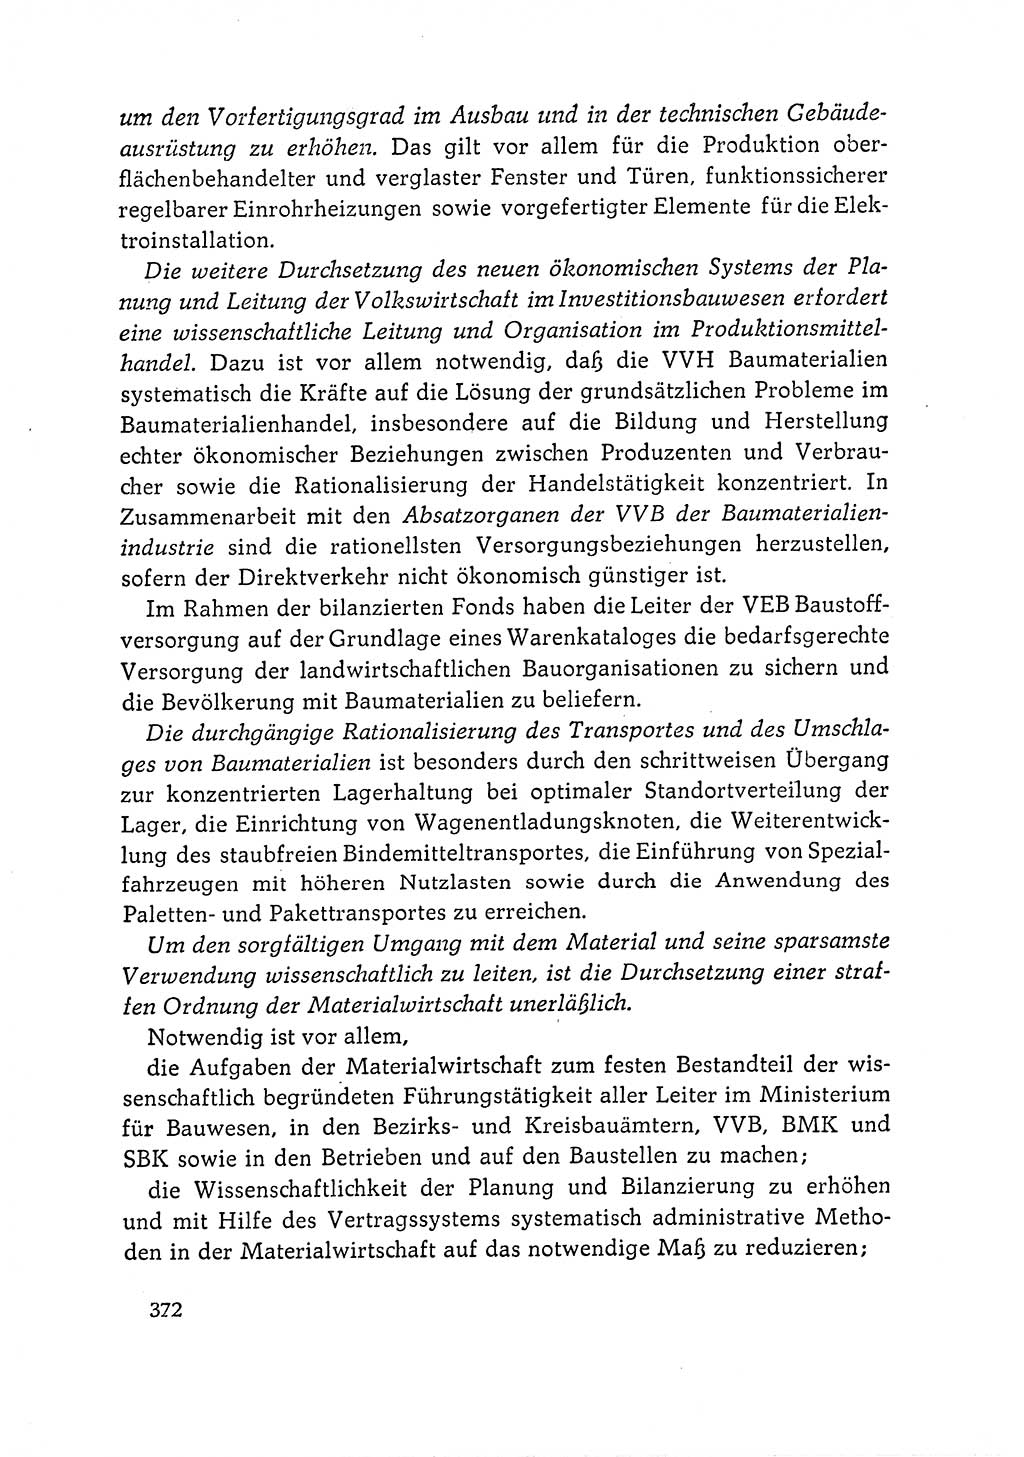 Dokumente der Sozialistischen Einheitspartei Deutschlands (SED) [Deutsche Demokratische Republik (DDR)] 1964-1965, Seite 372 (Dok. SED DDR 1964-1965, S. 372)